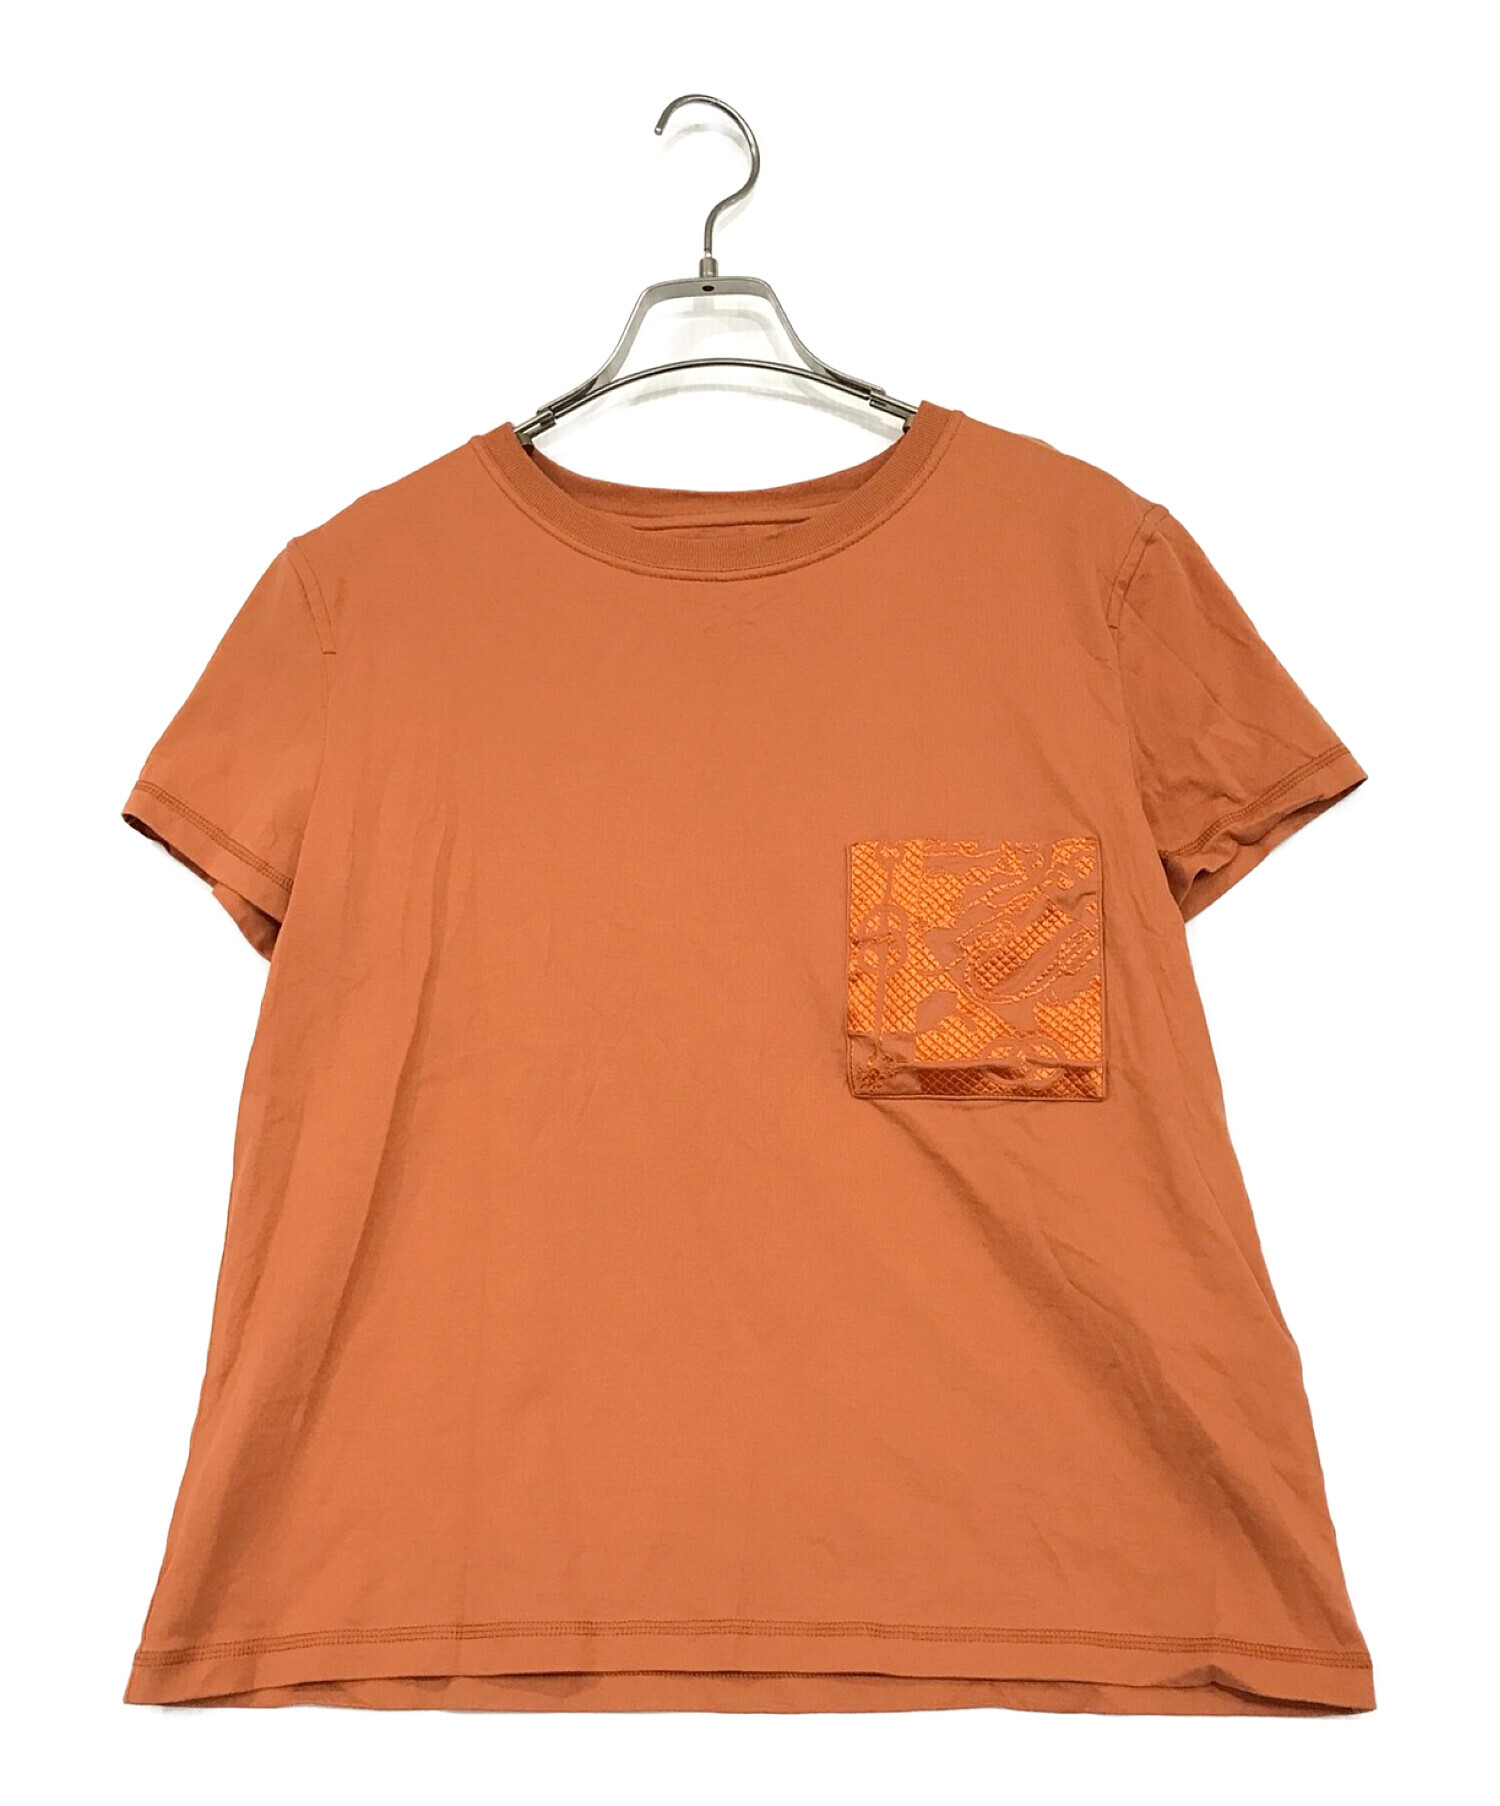 HERMES (エルメス) ポケットTシャツ オレンジ サイズ:SIZE 40